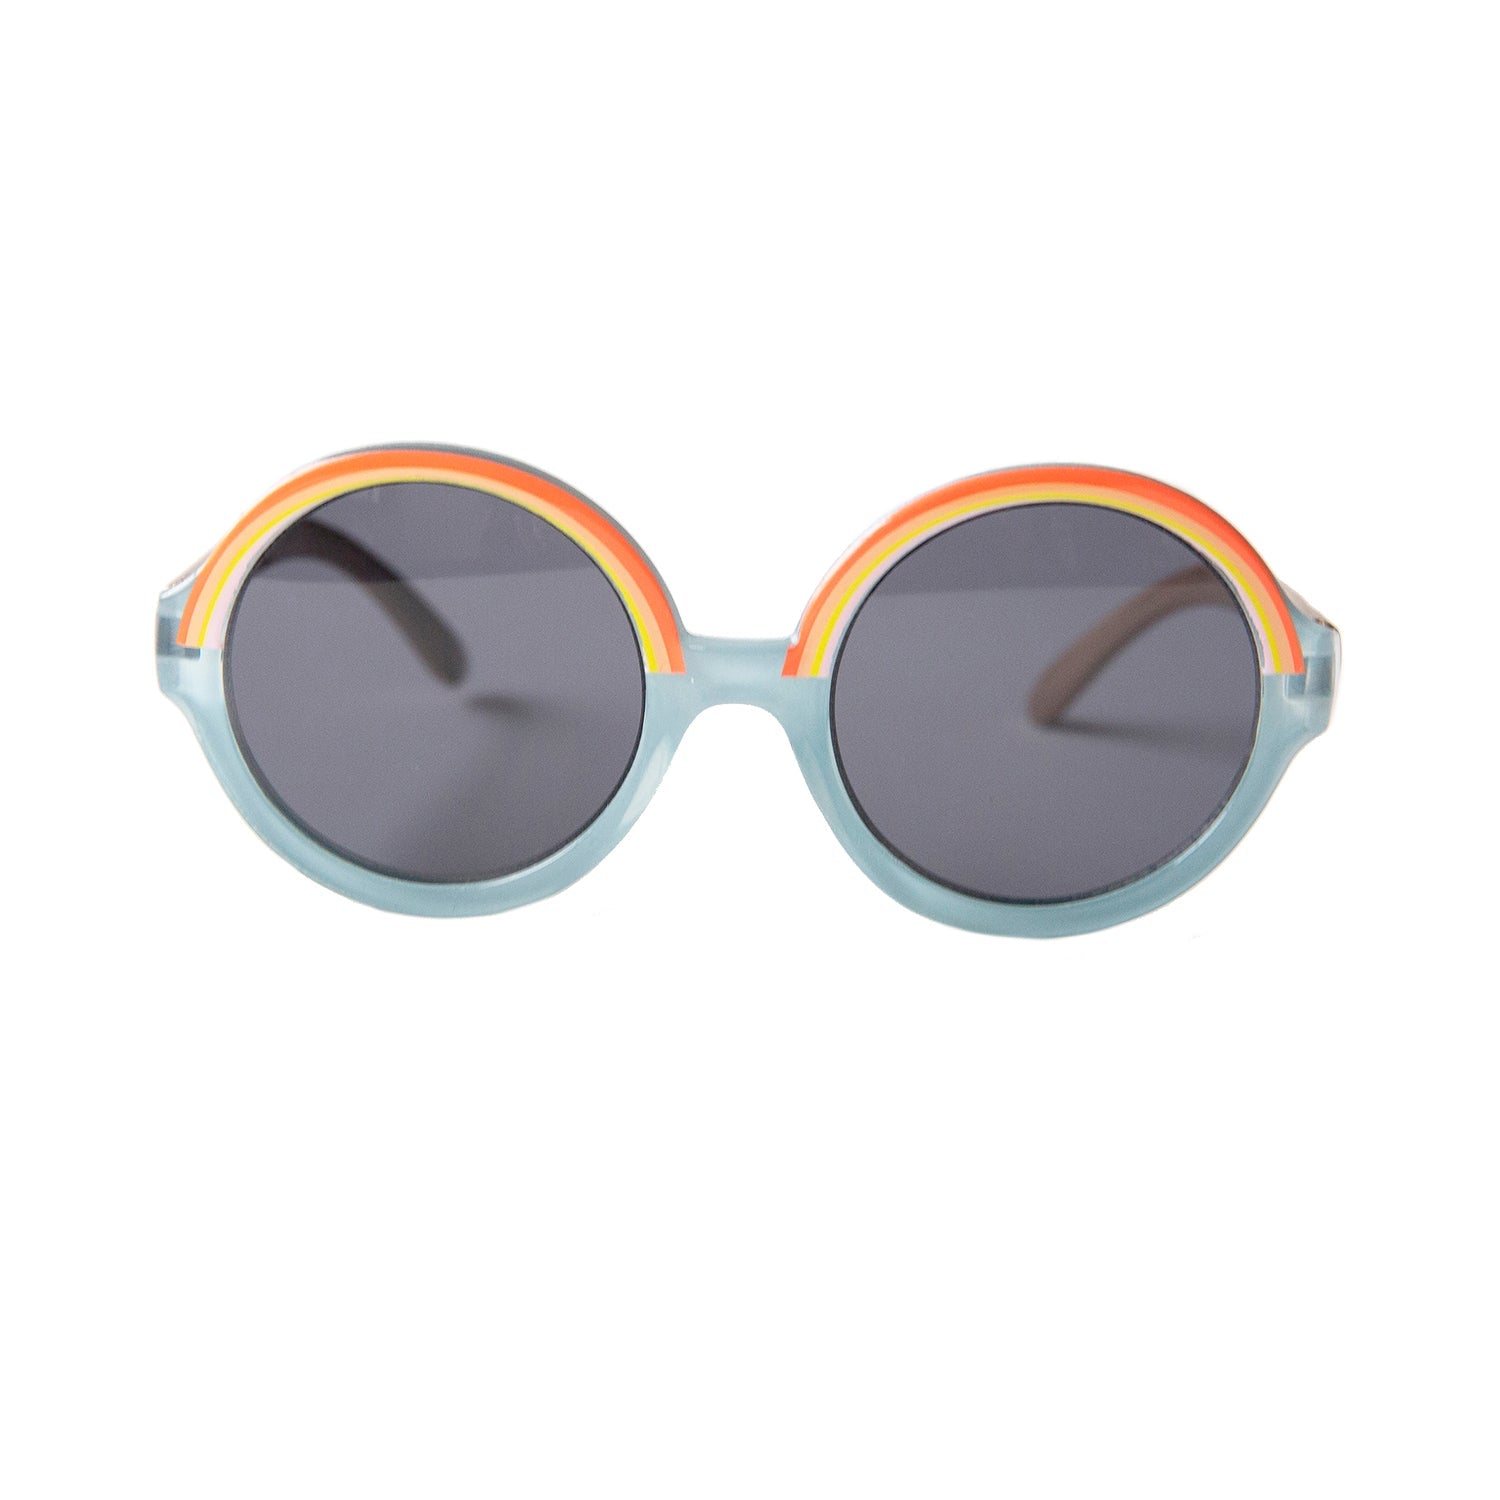 Rainbow Round Sunglasses - Muddy Boots Home UK